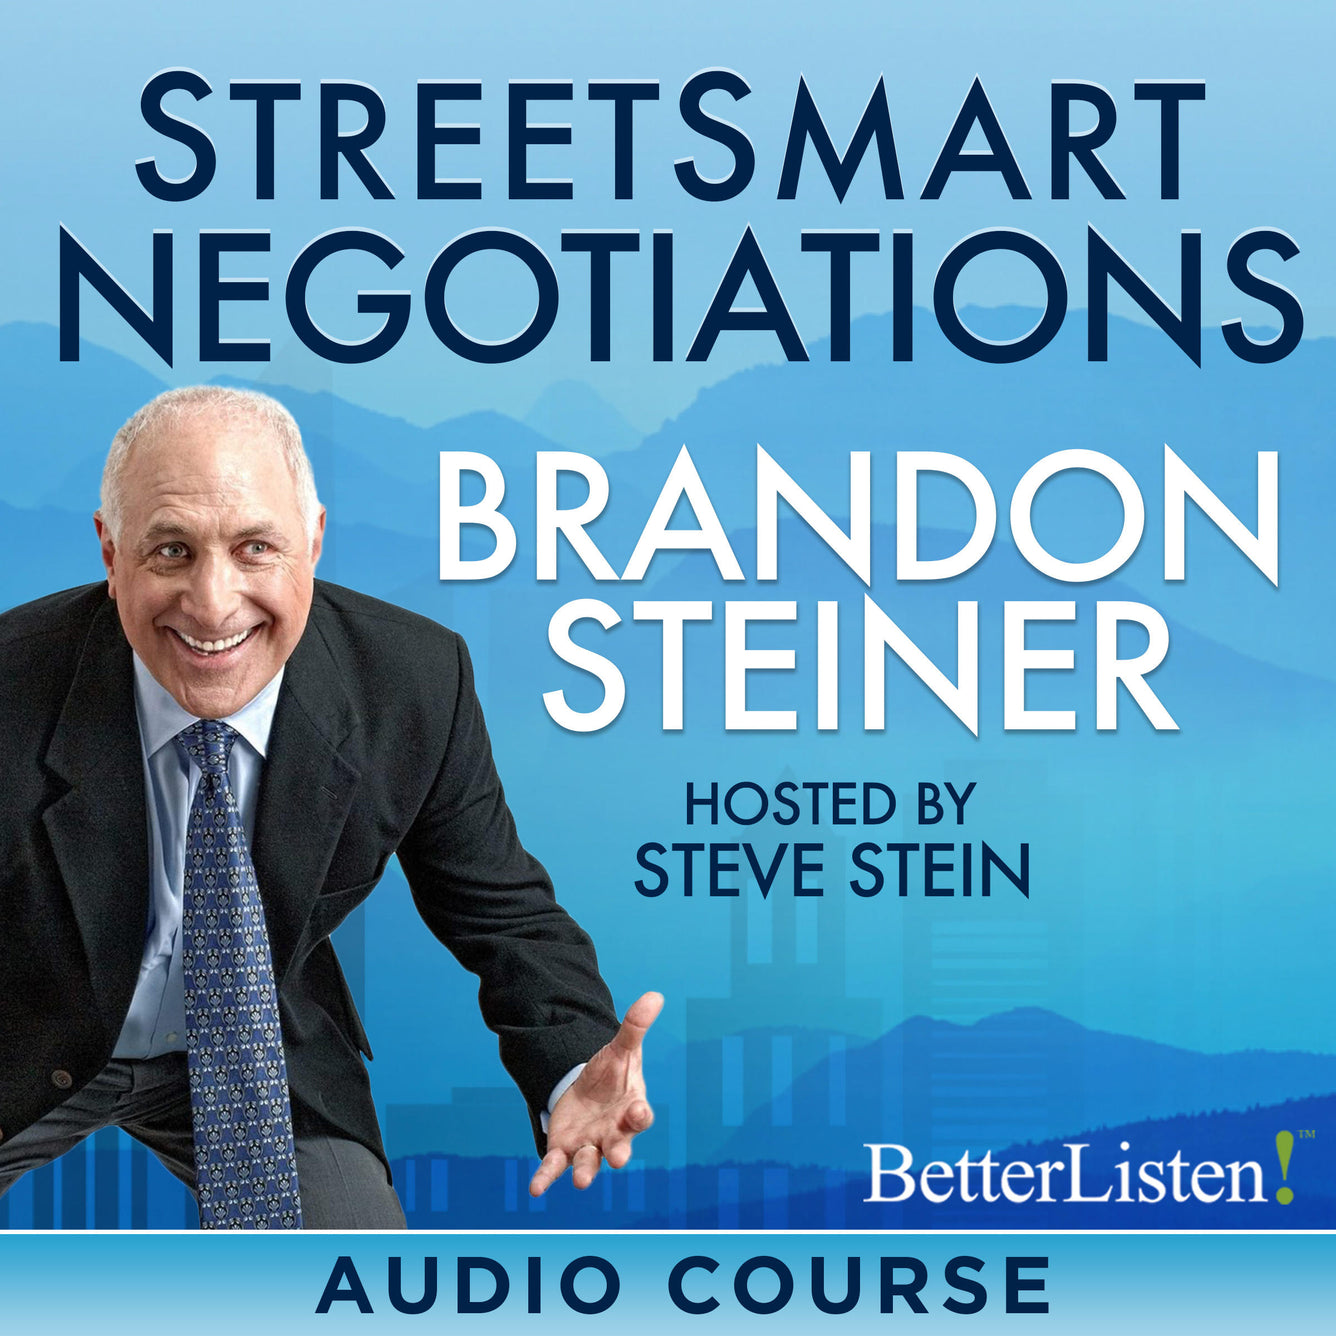 Street Smart Negotiations Premium Course with Brandon Steiner